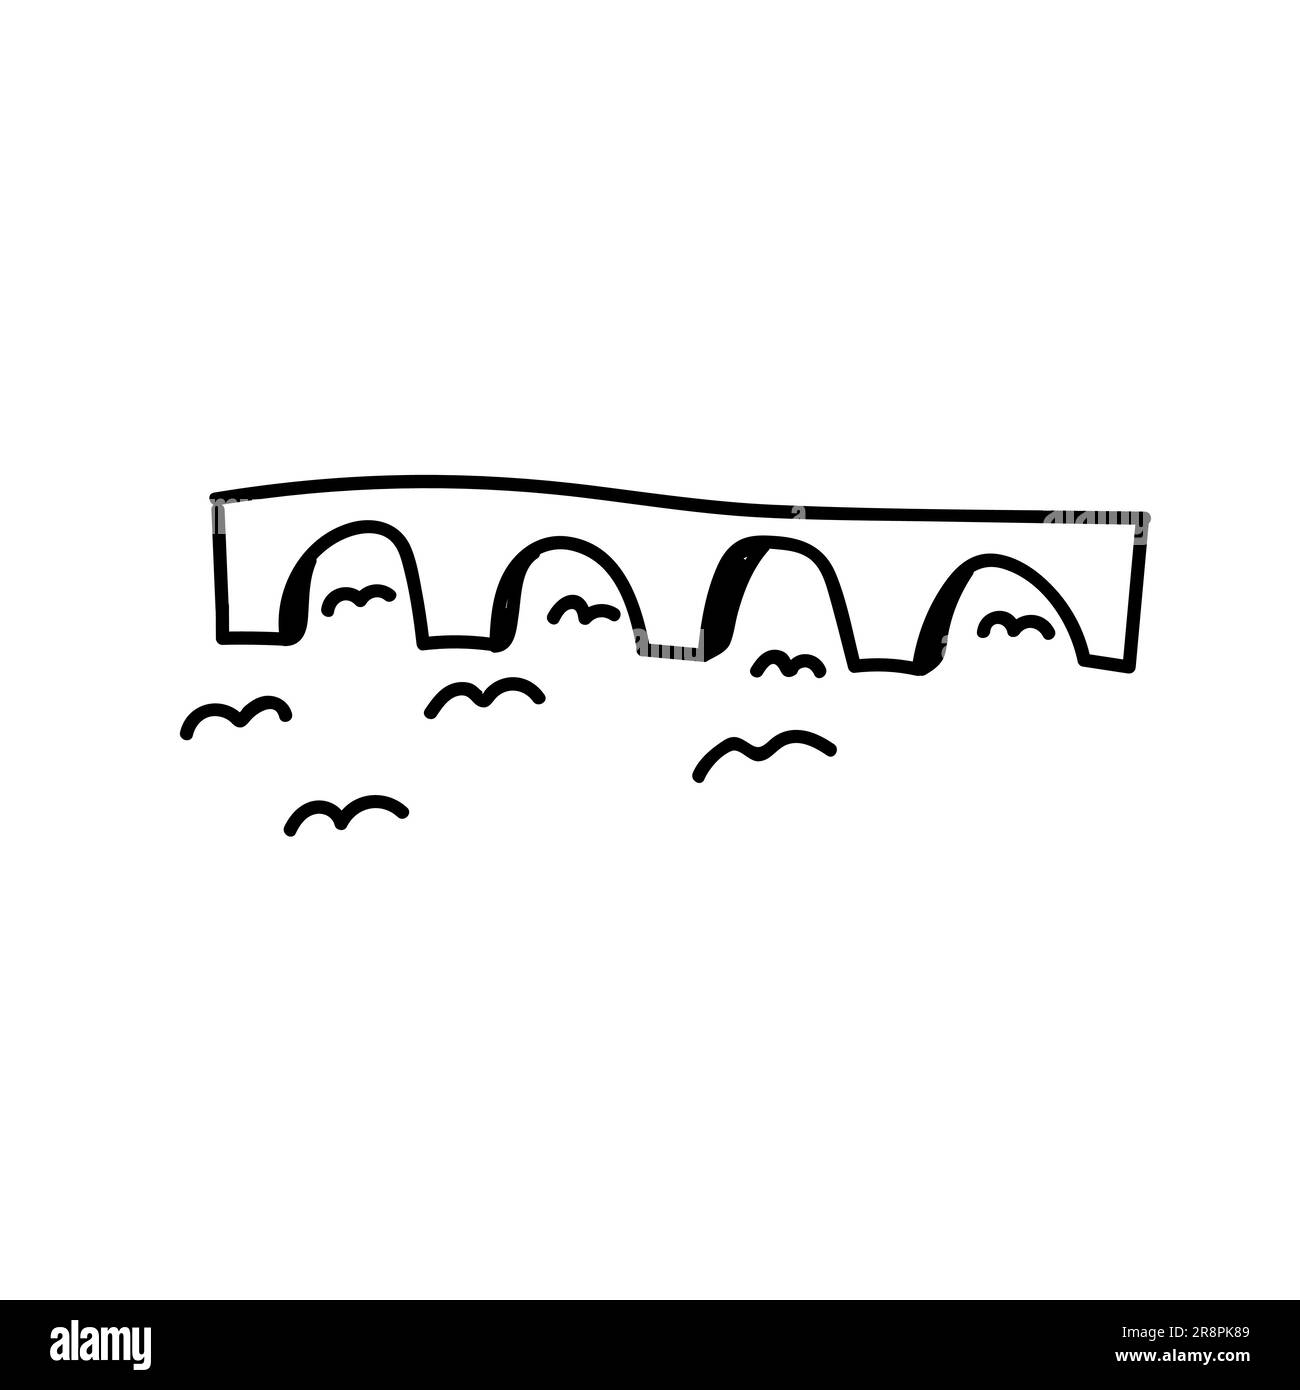 Toulouse-Brücke. Handgezeichnete Doodle-Vektor-Illustration isoliert auf weißem Hintergrund. Einfache Zeichnungen mit schwarzer Farbe. Stock Vektor